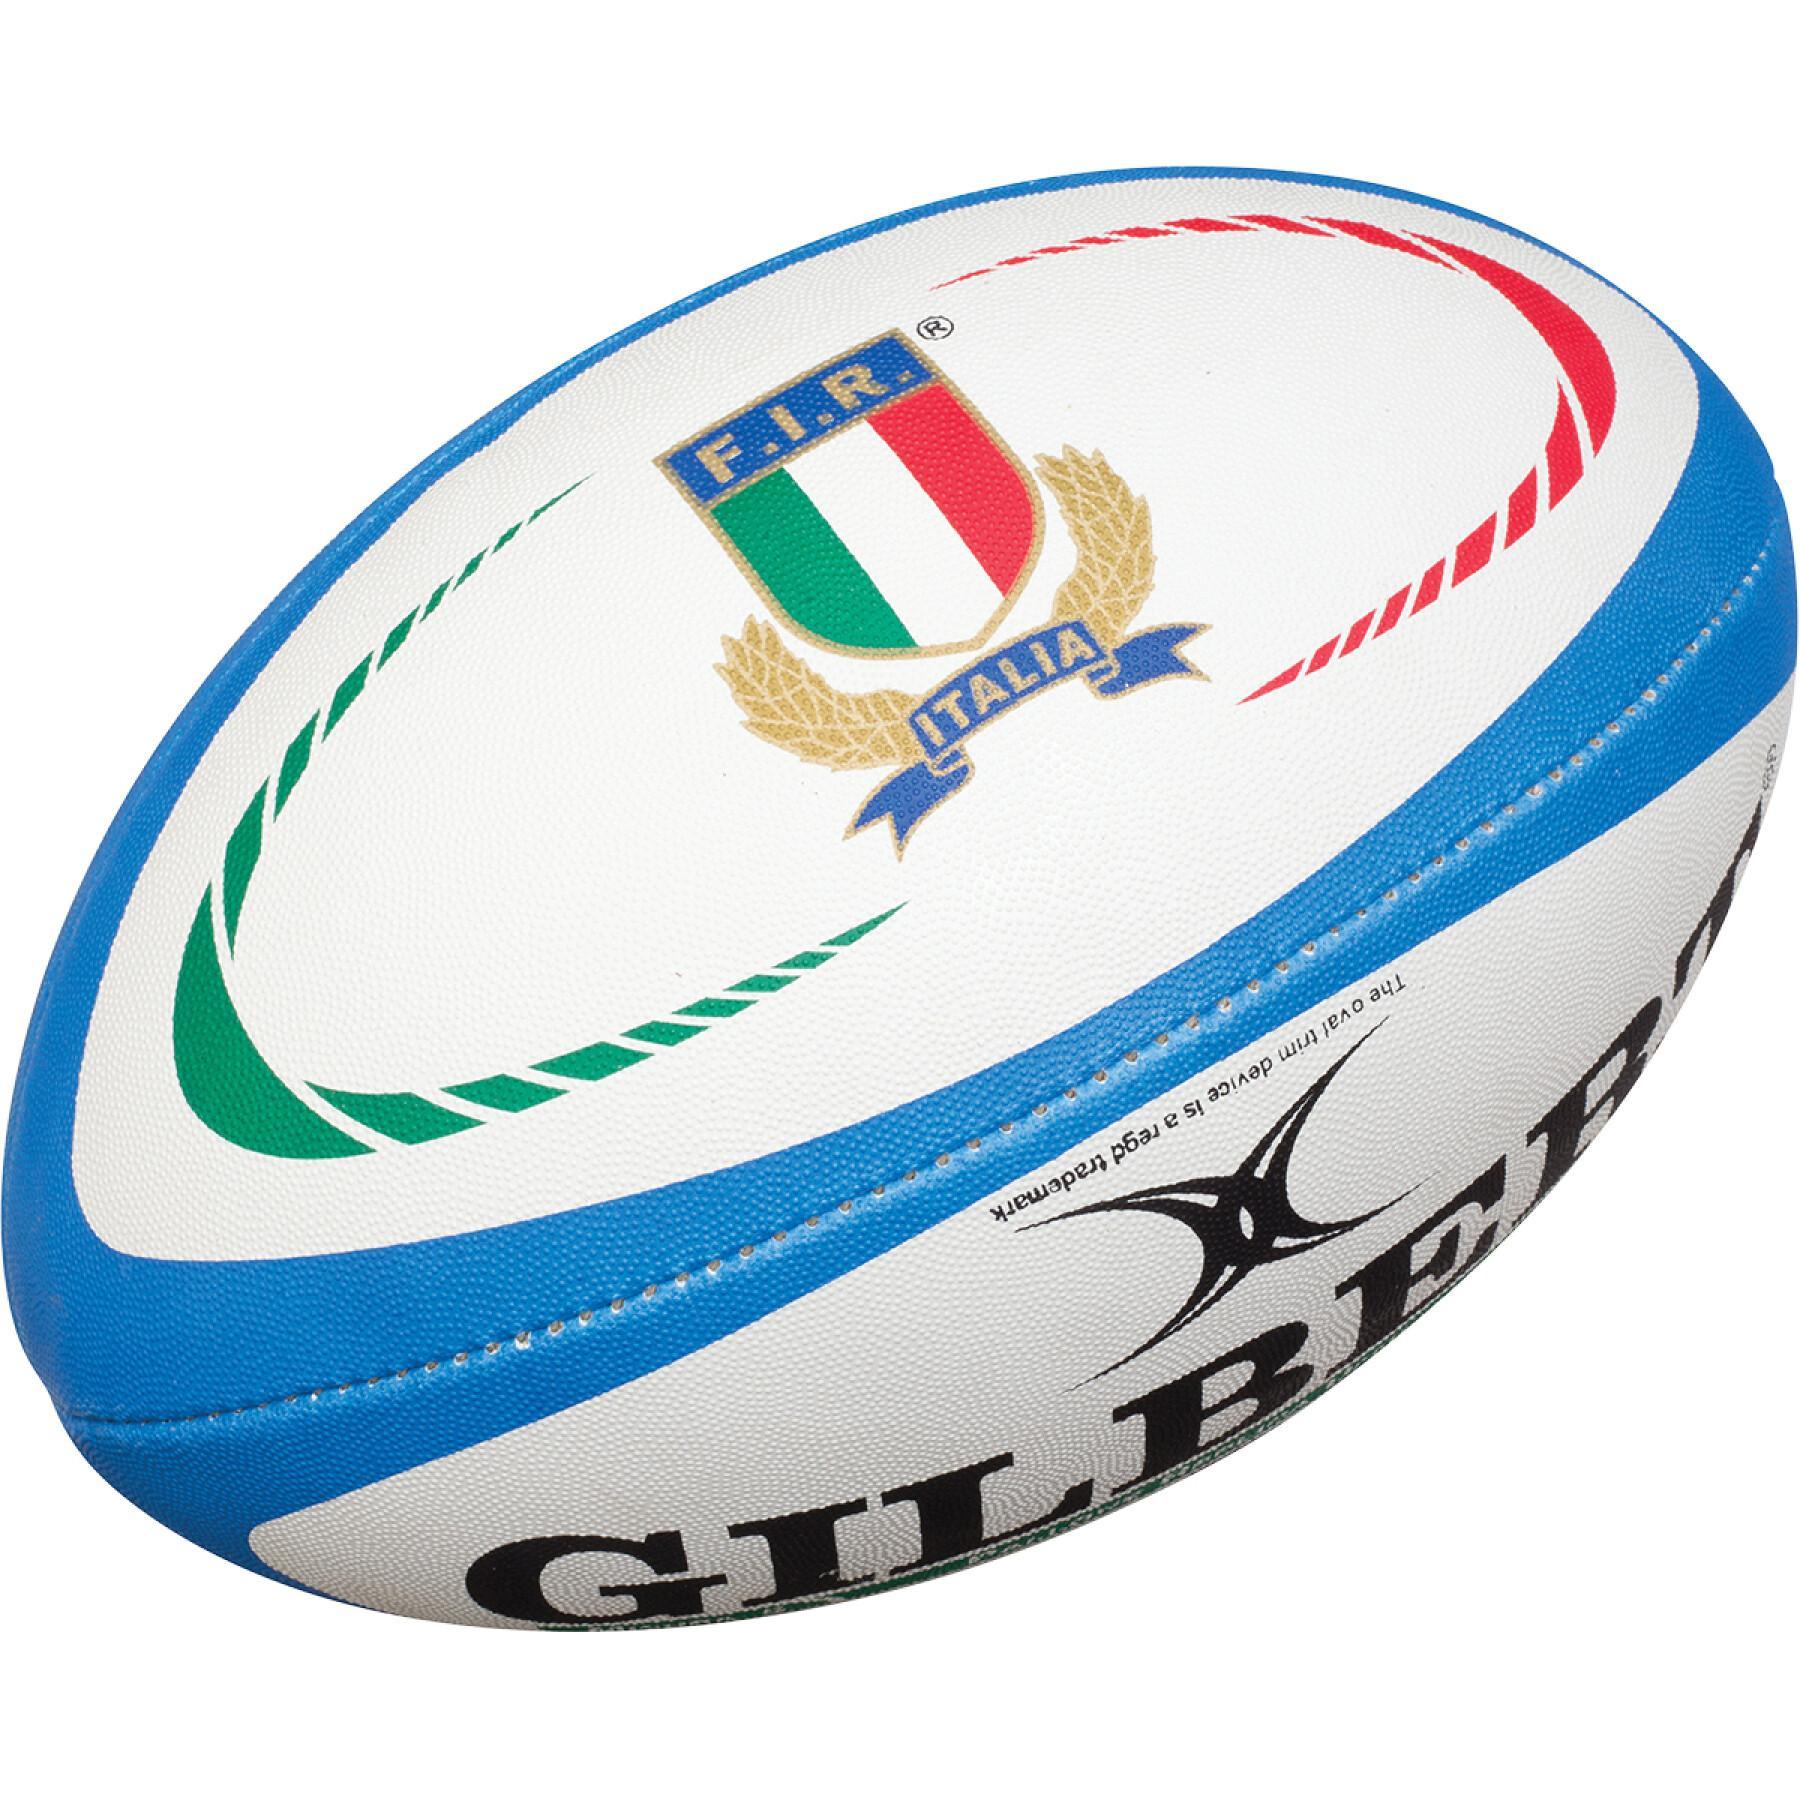 Ballon de rugby Replica Gilbert Italie (taille 5)